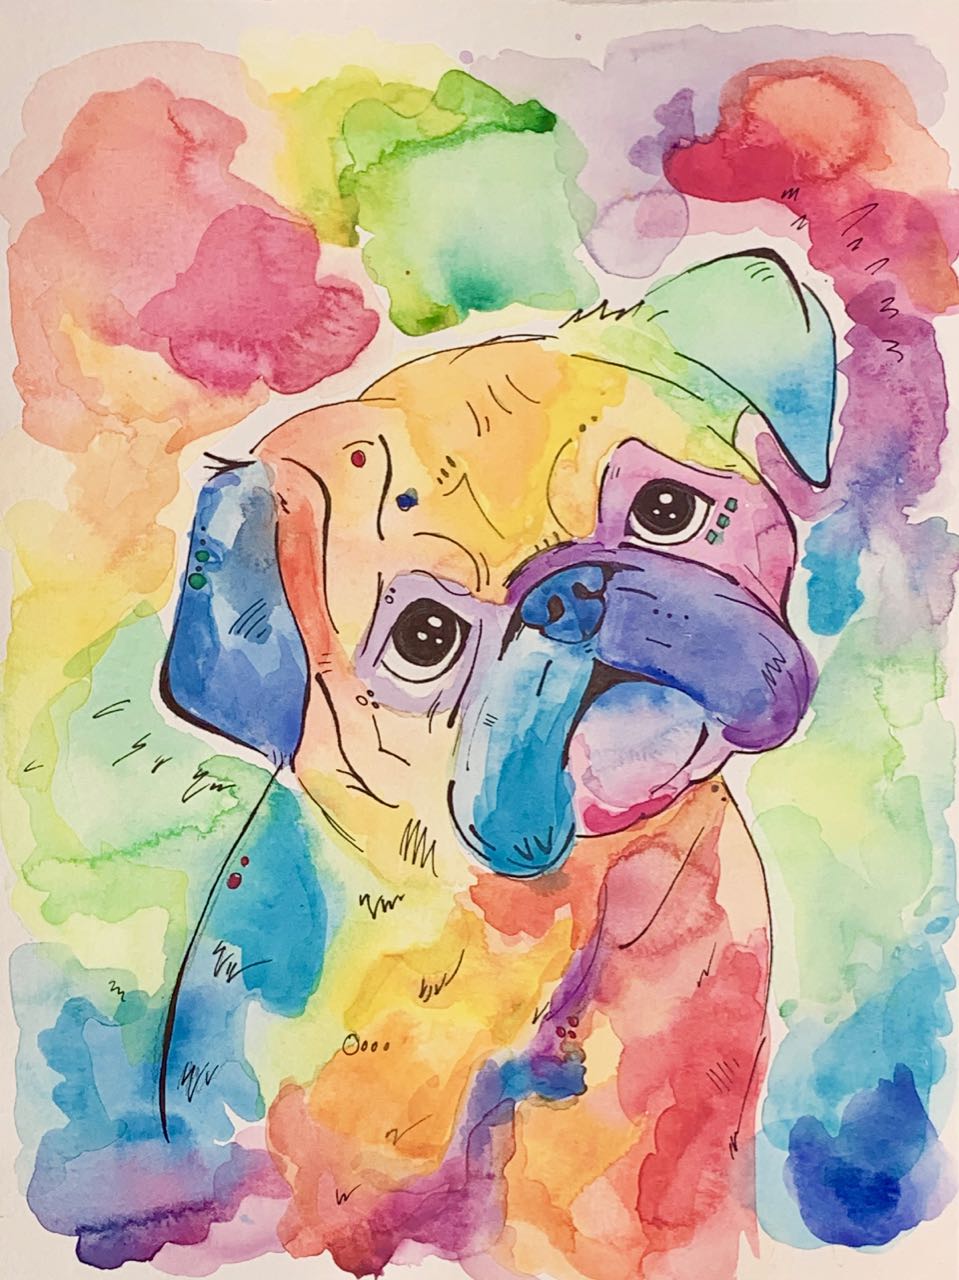 Rainbow Pug